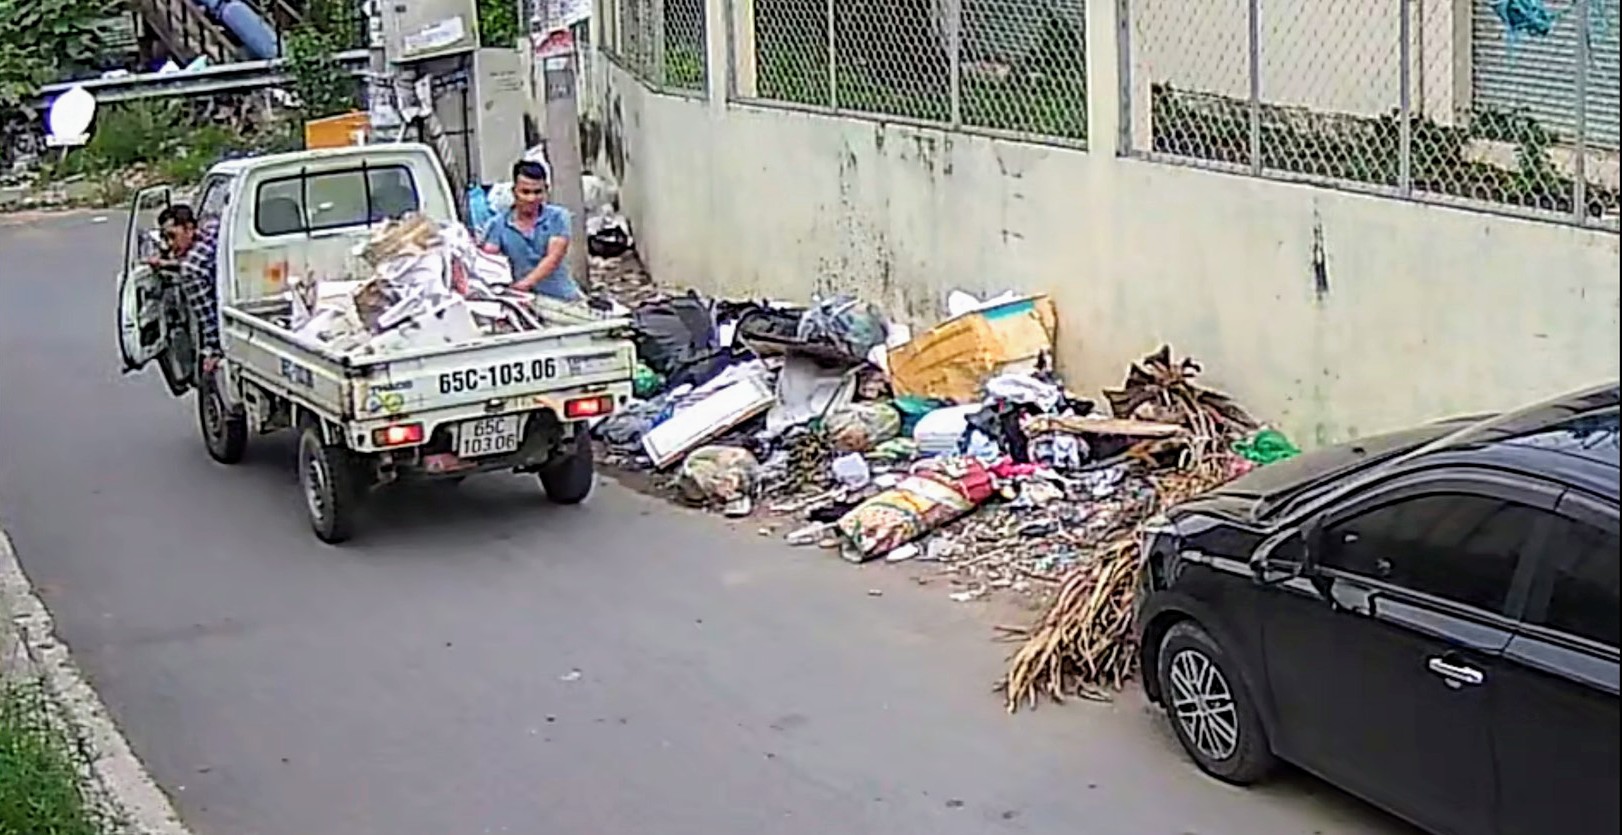 Hình ảnh bỏ rác thải không đúng nơi qui định trích xuất từ camera phường Hưng Lợi